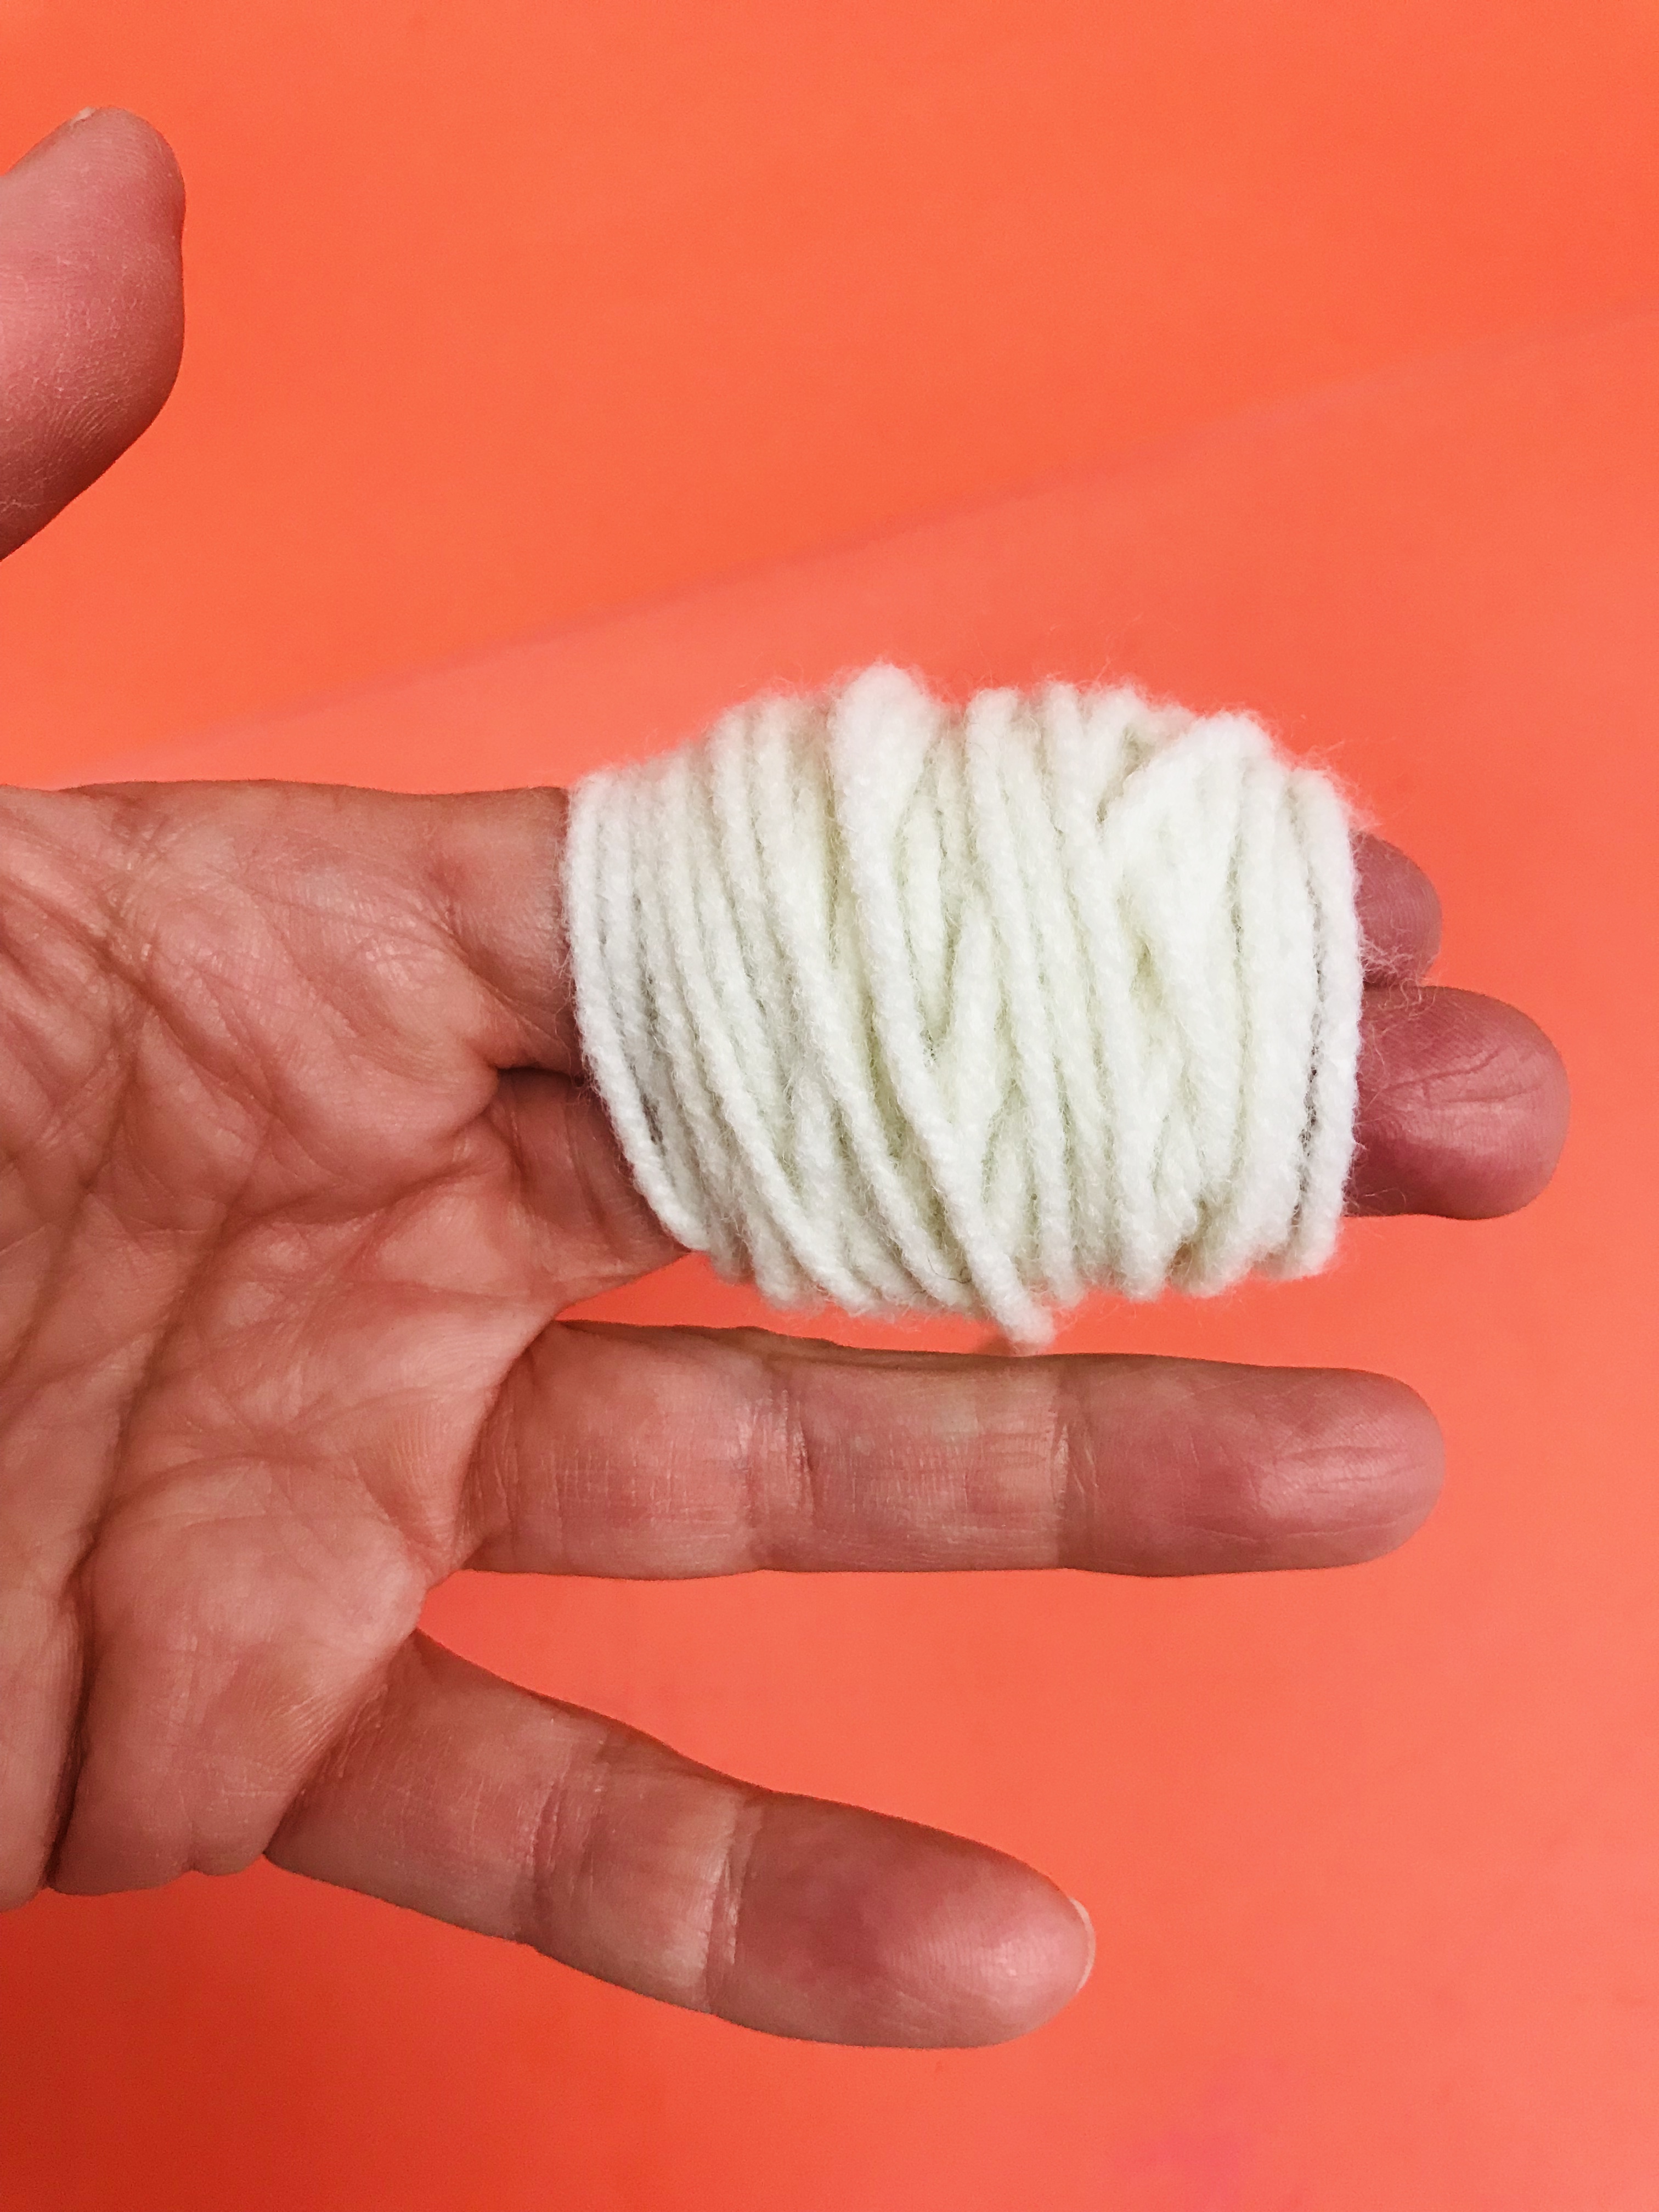 Fingers wrapped in yarn